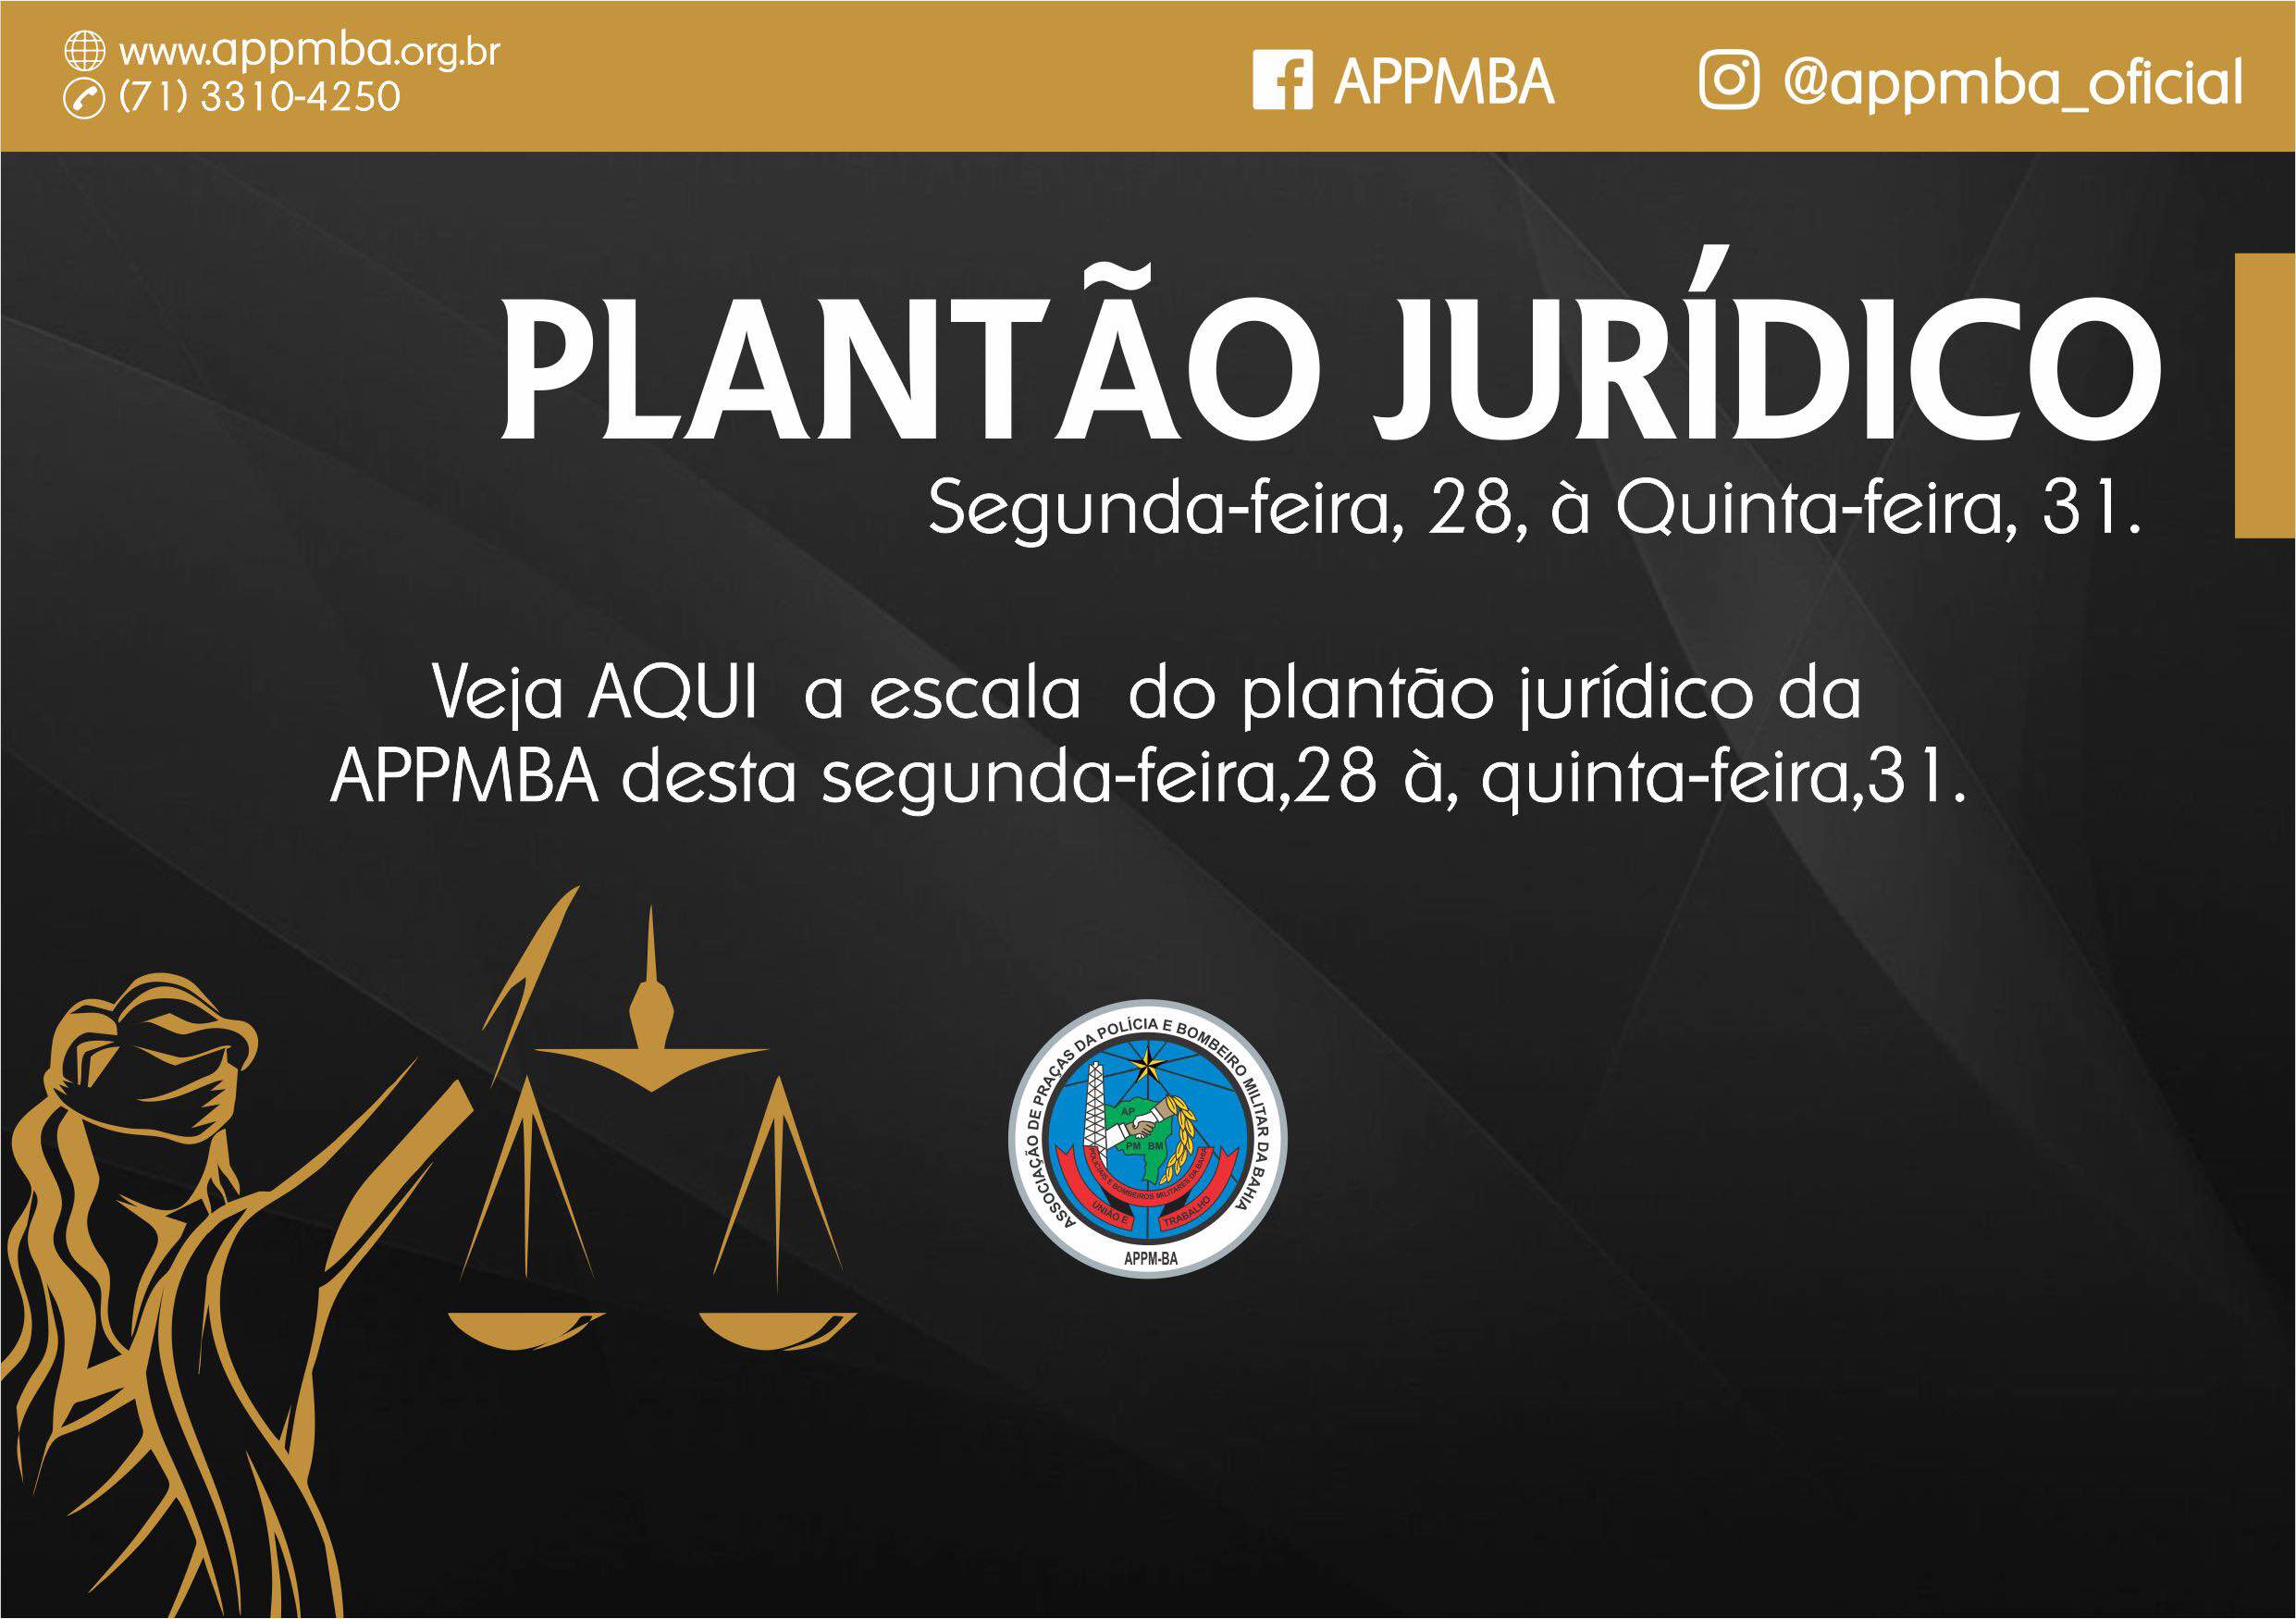 Plantão Jurídico APPM-BA, dias 28 à 31/5/2018